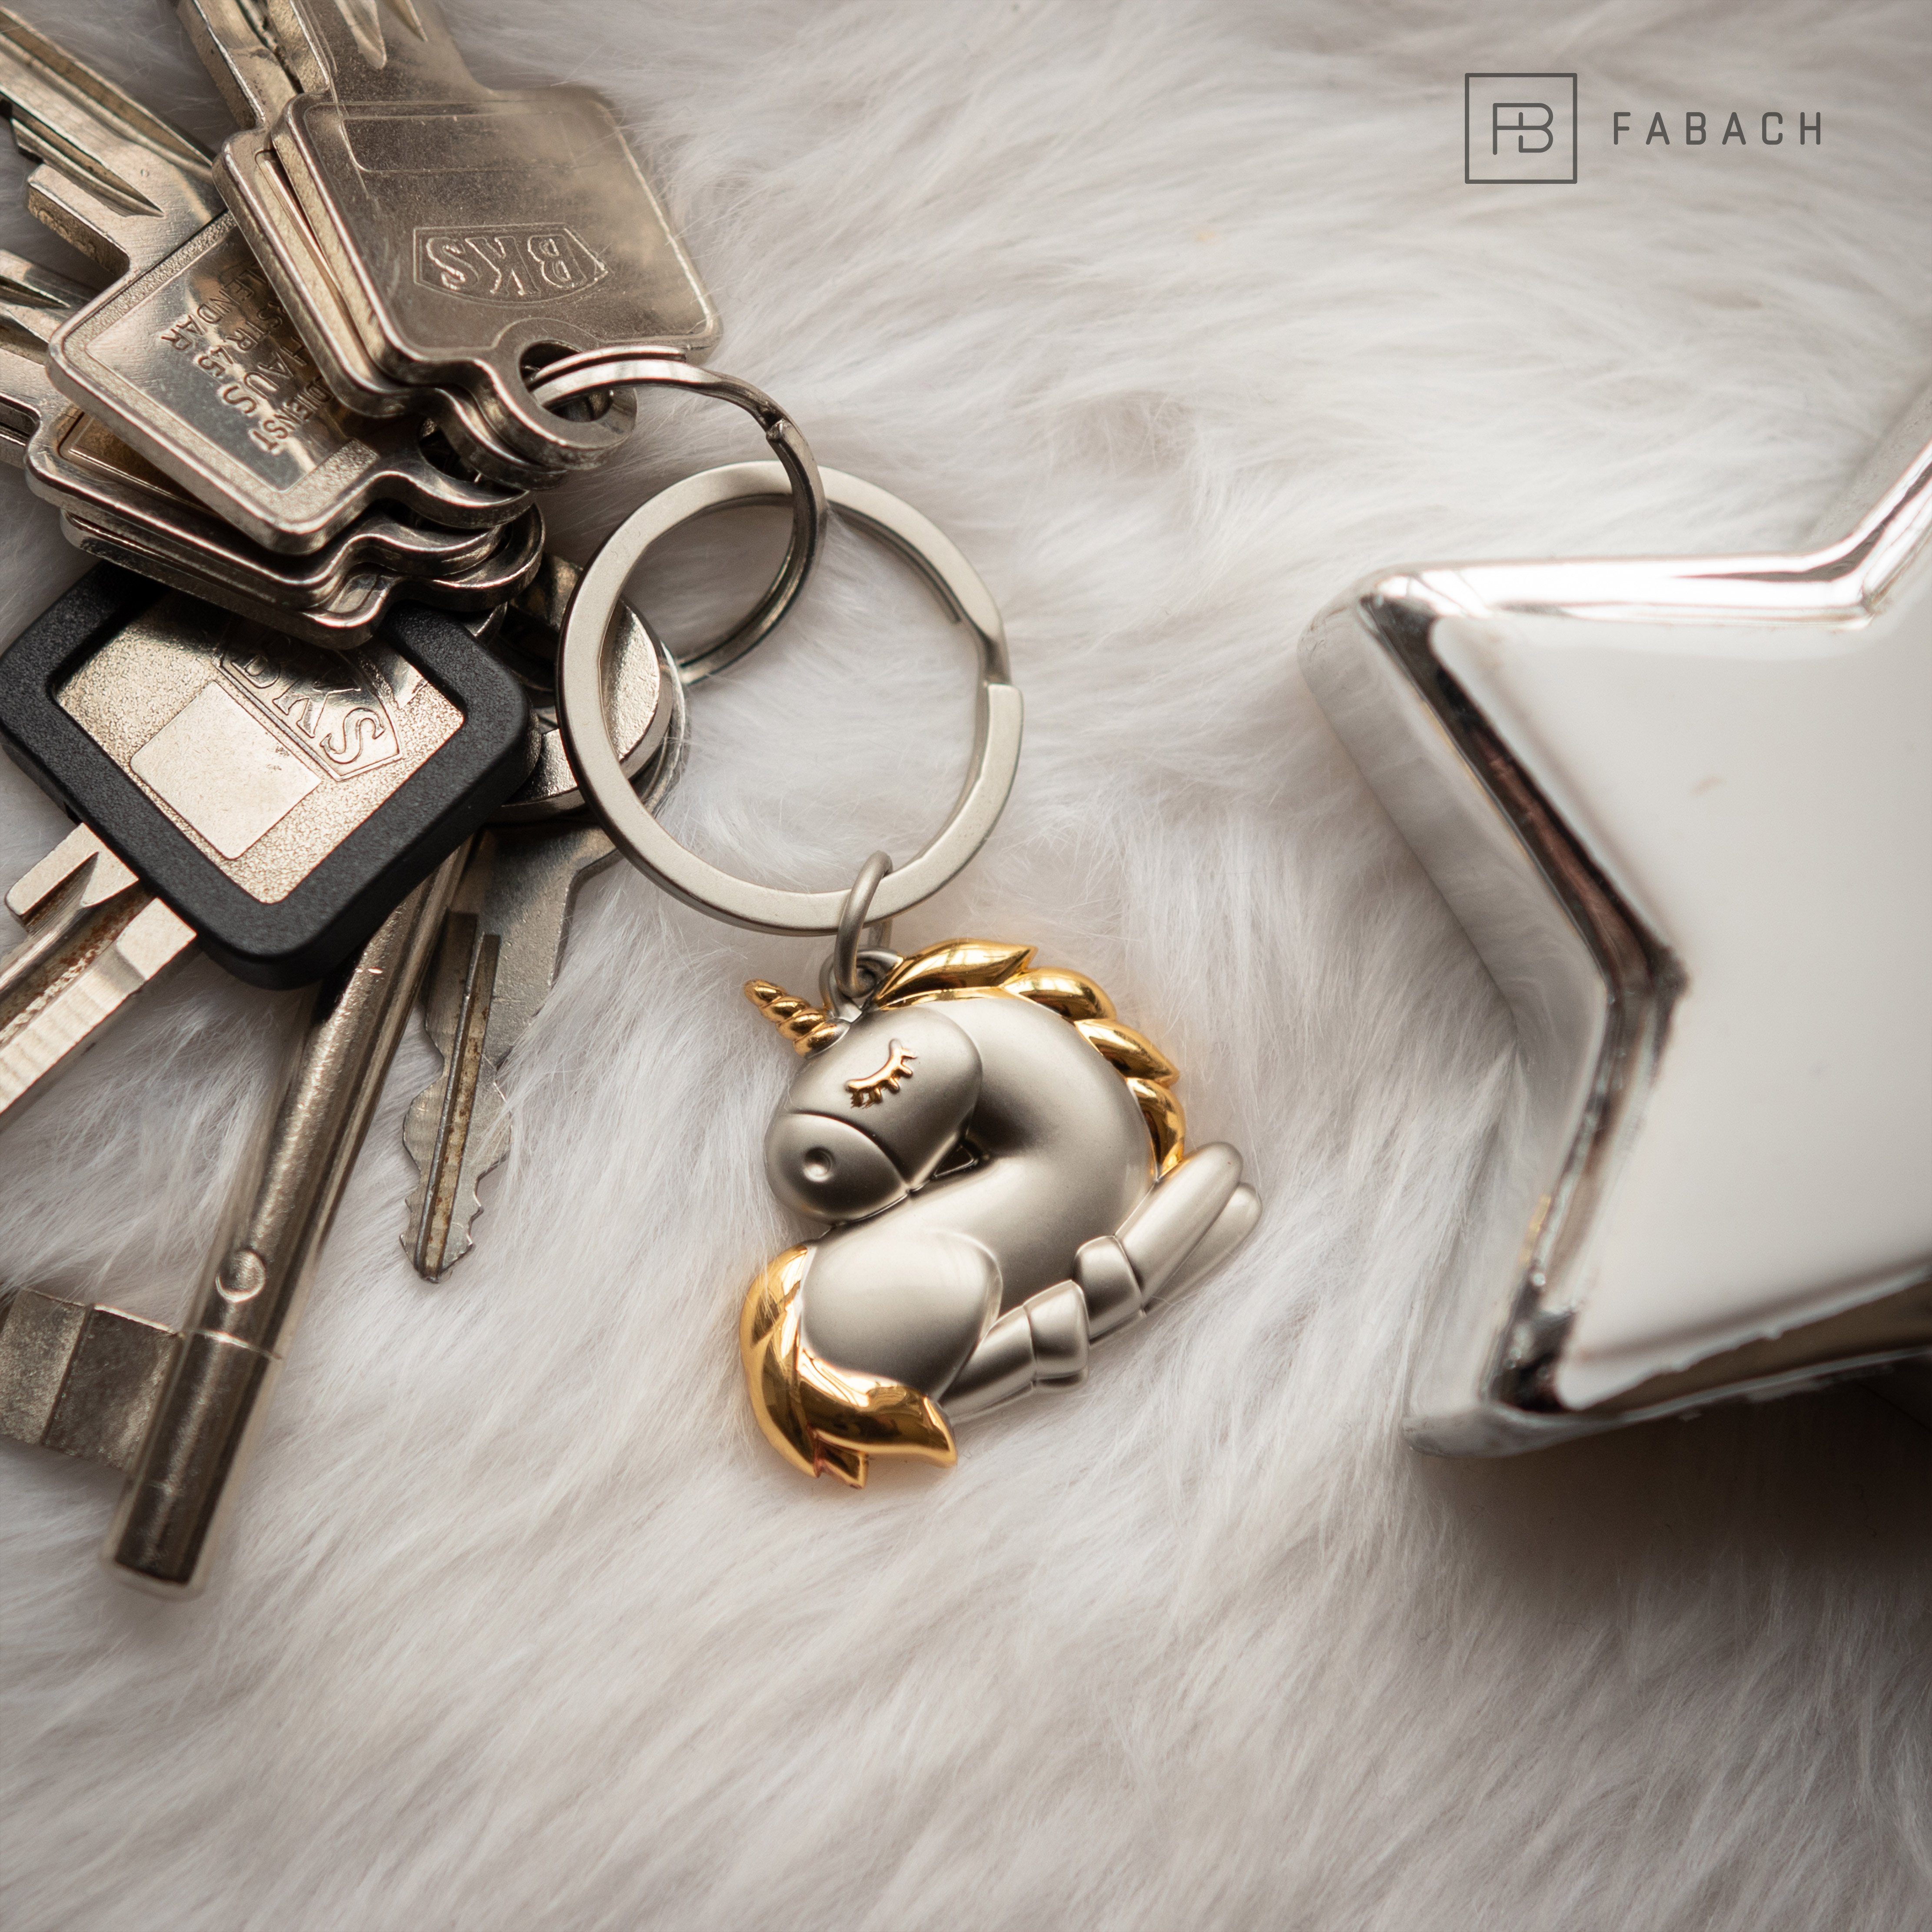 Glücksbringer Anhänger Bronze Geschenk Mädchen Frauen FABACH "Sleepy" - Einhorn Antique für Schlüsselanhänger